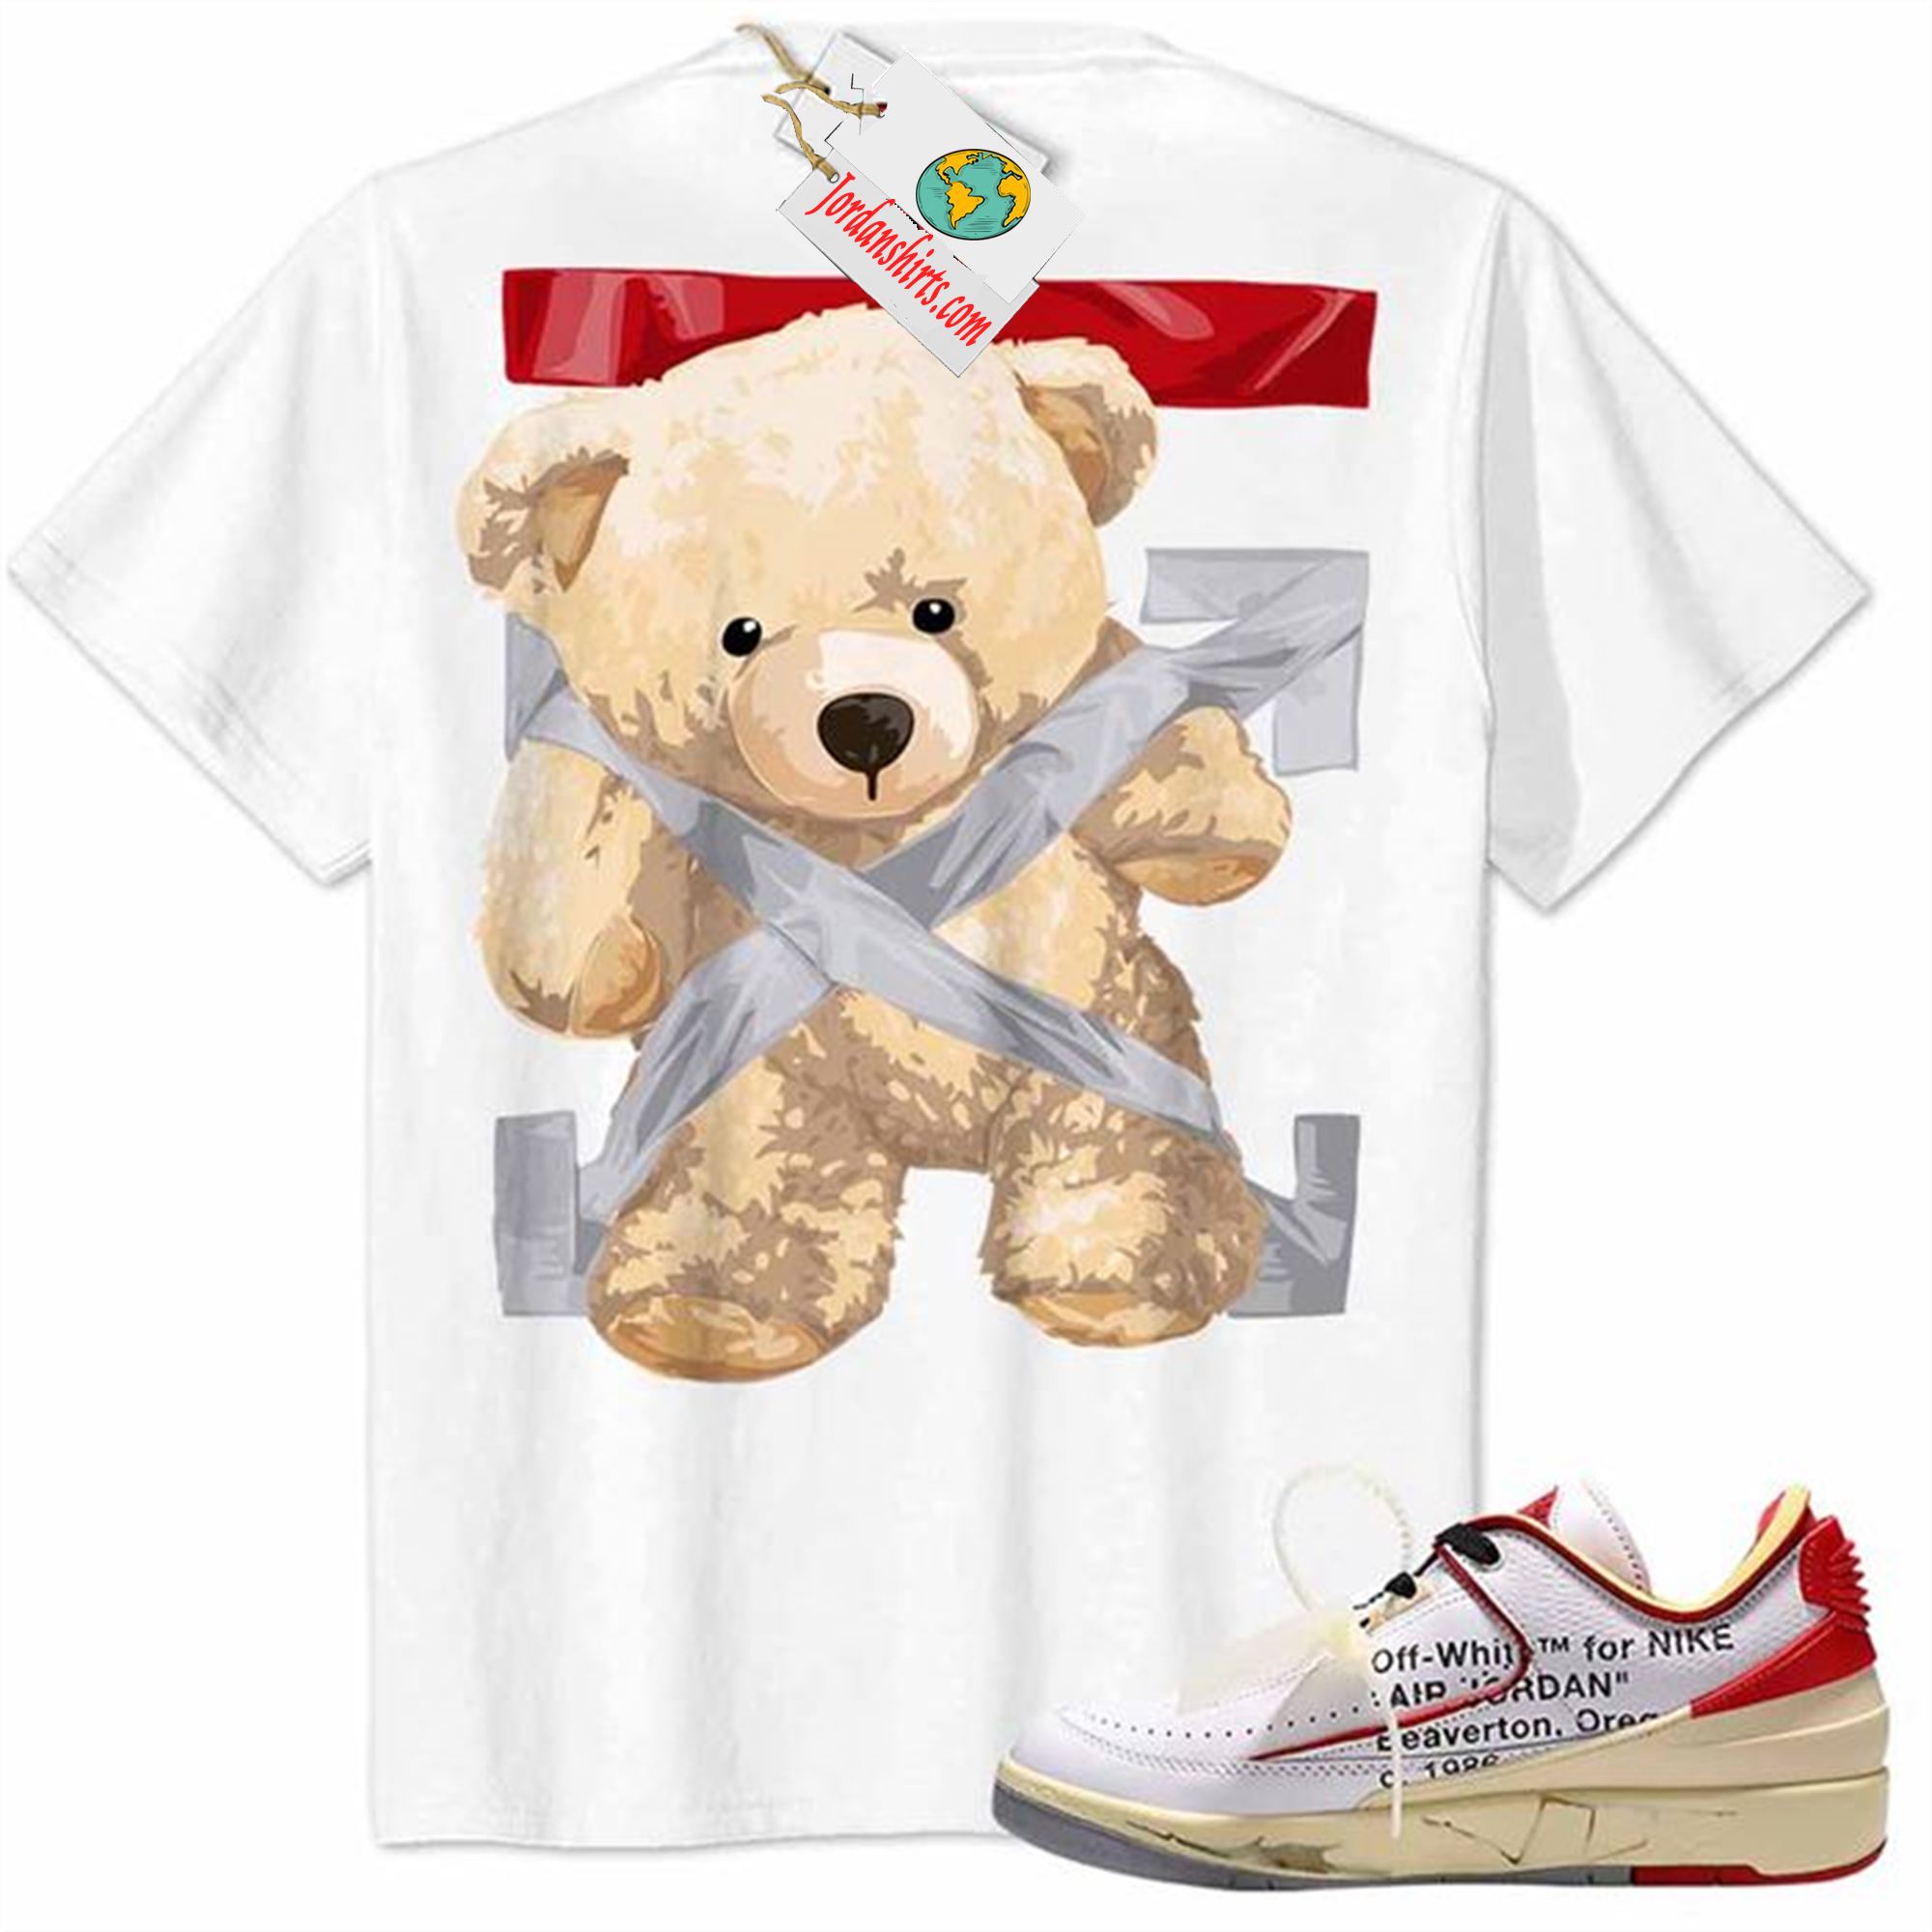 Jordan 2 Shirt, Teddy Bear Duck Tape Backside White Air Jordan 2 Low White Red Off-white 2s Full Size Up To 5xl